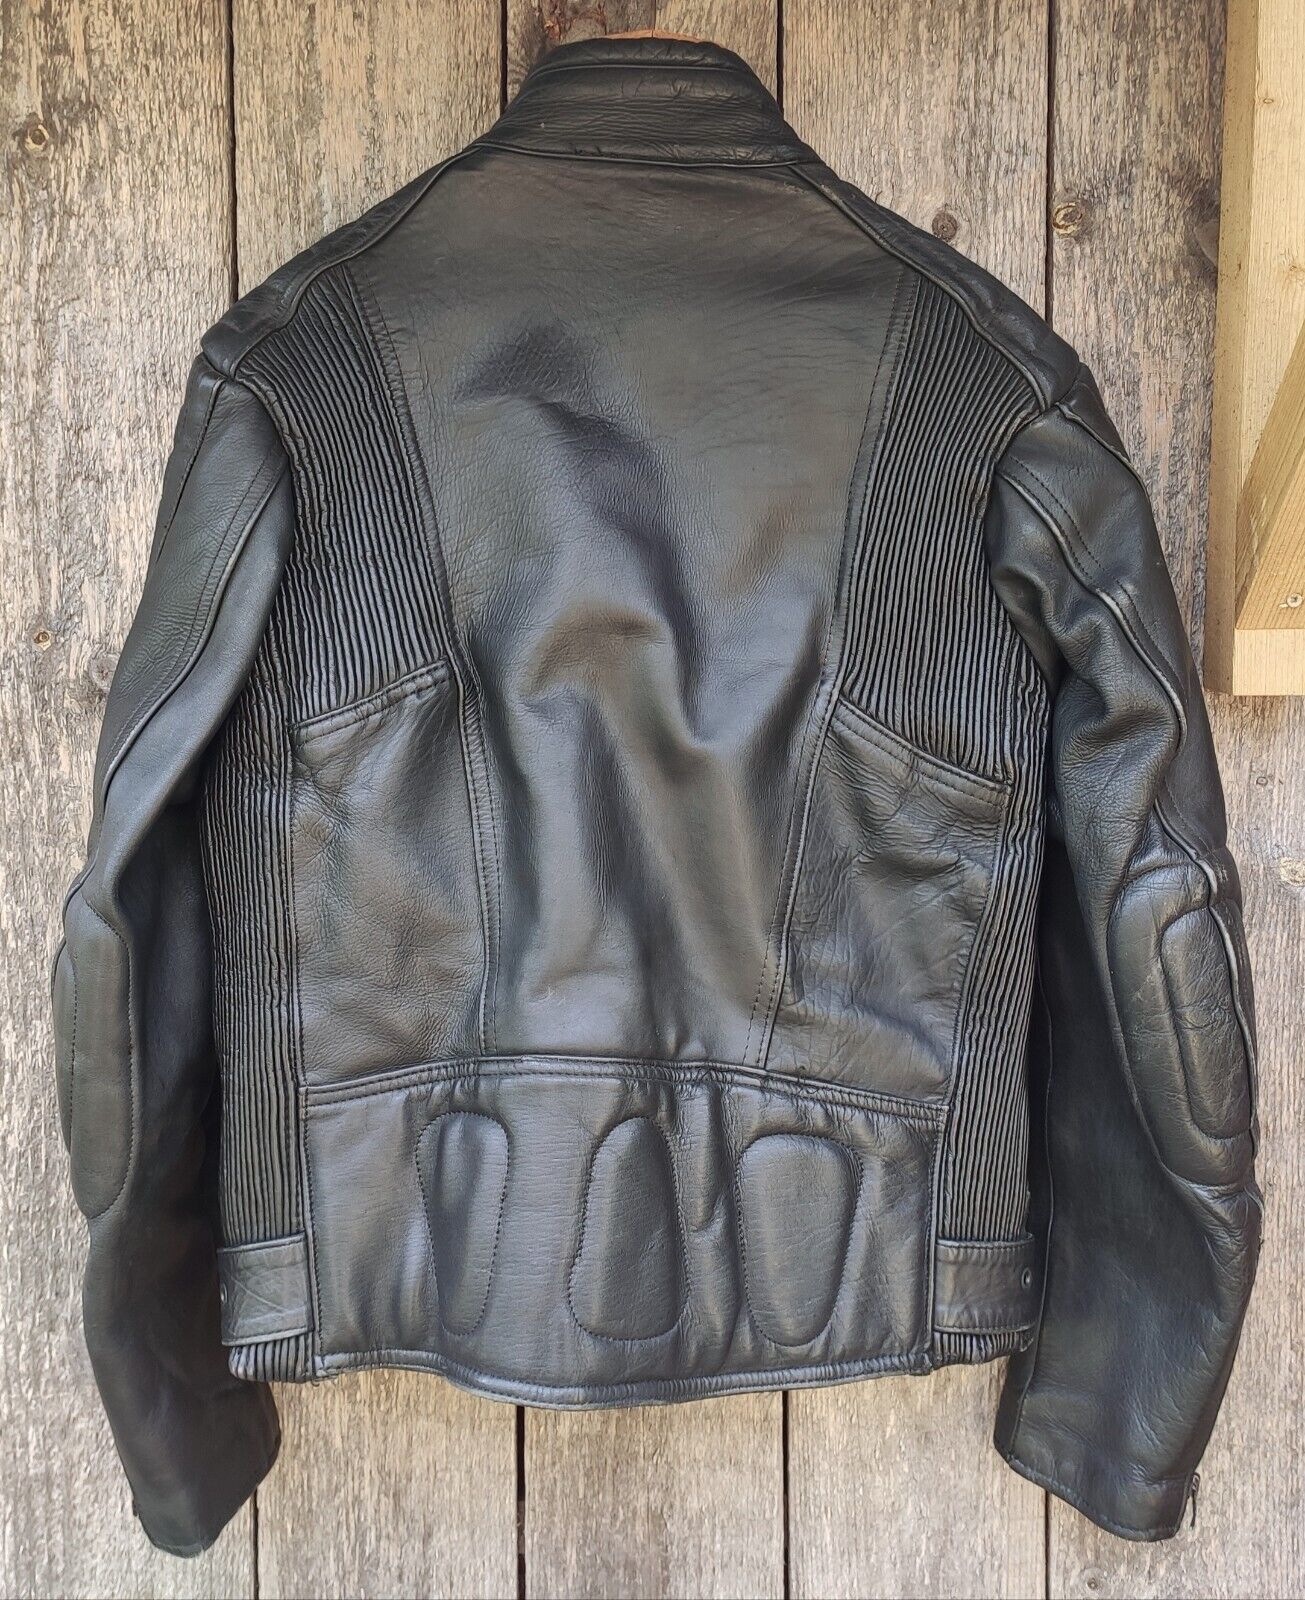 Image of Vtg Kett Leathers Cafe Racer Motorcycle Jacket Size Medium Biker/Classic/Retro